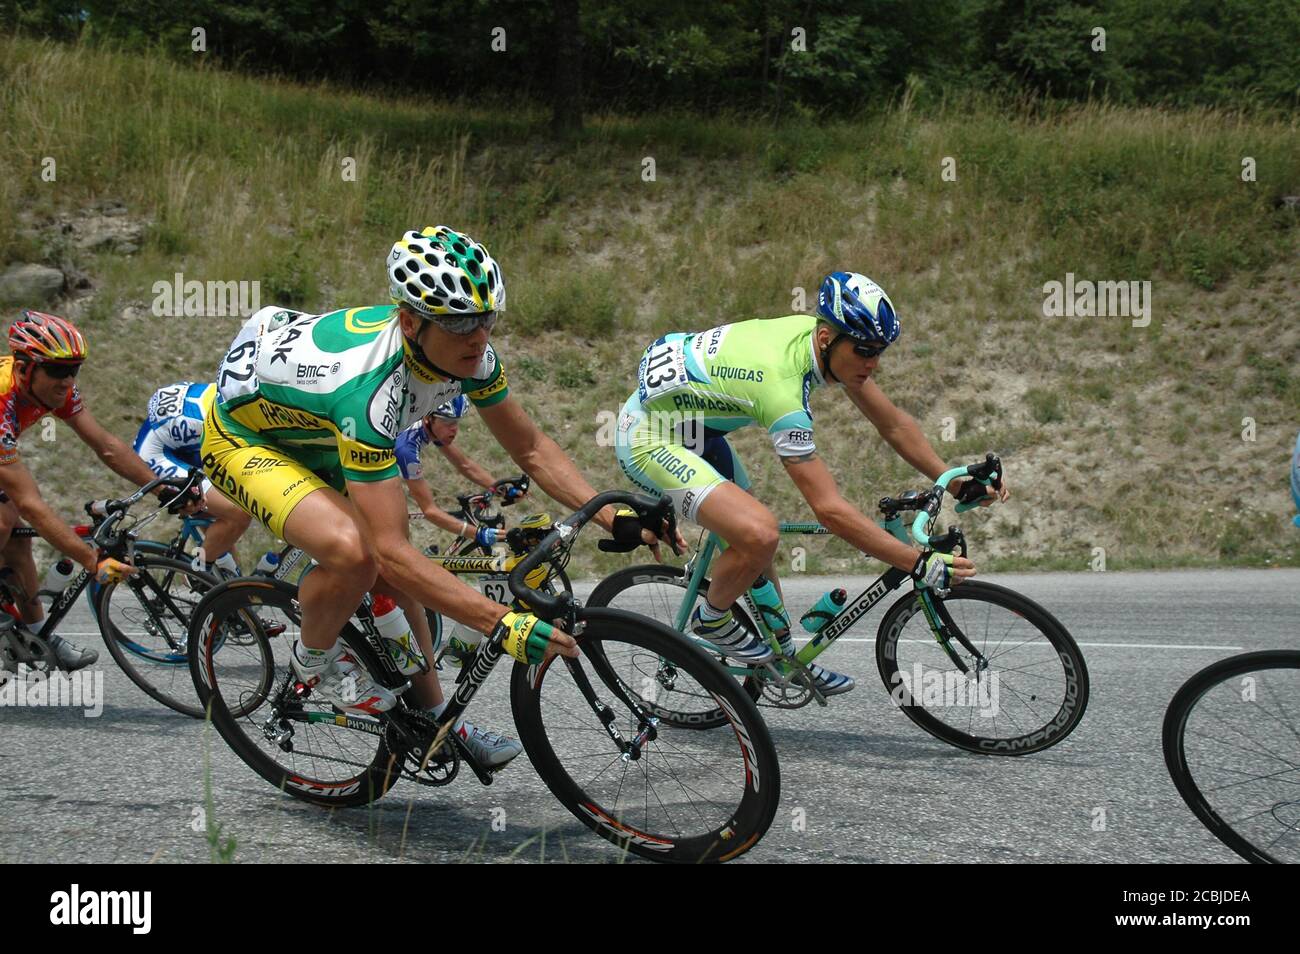 Der schwedische Radprofi Magnus Bäckstedt (rechts - Nummer 113) startet 2005 bei der Tour de France - Etappe 11: Courchevel - Briançon. Stockfoto